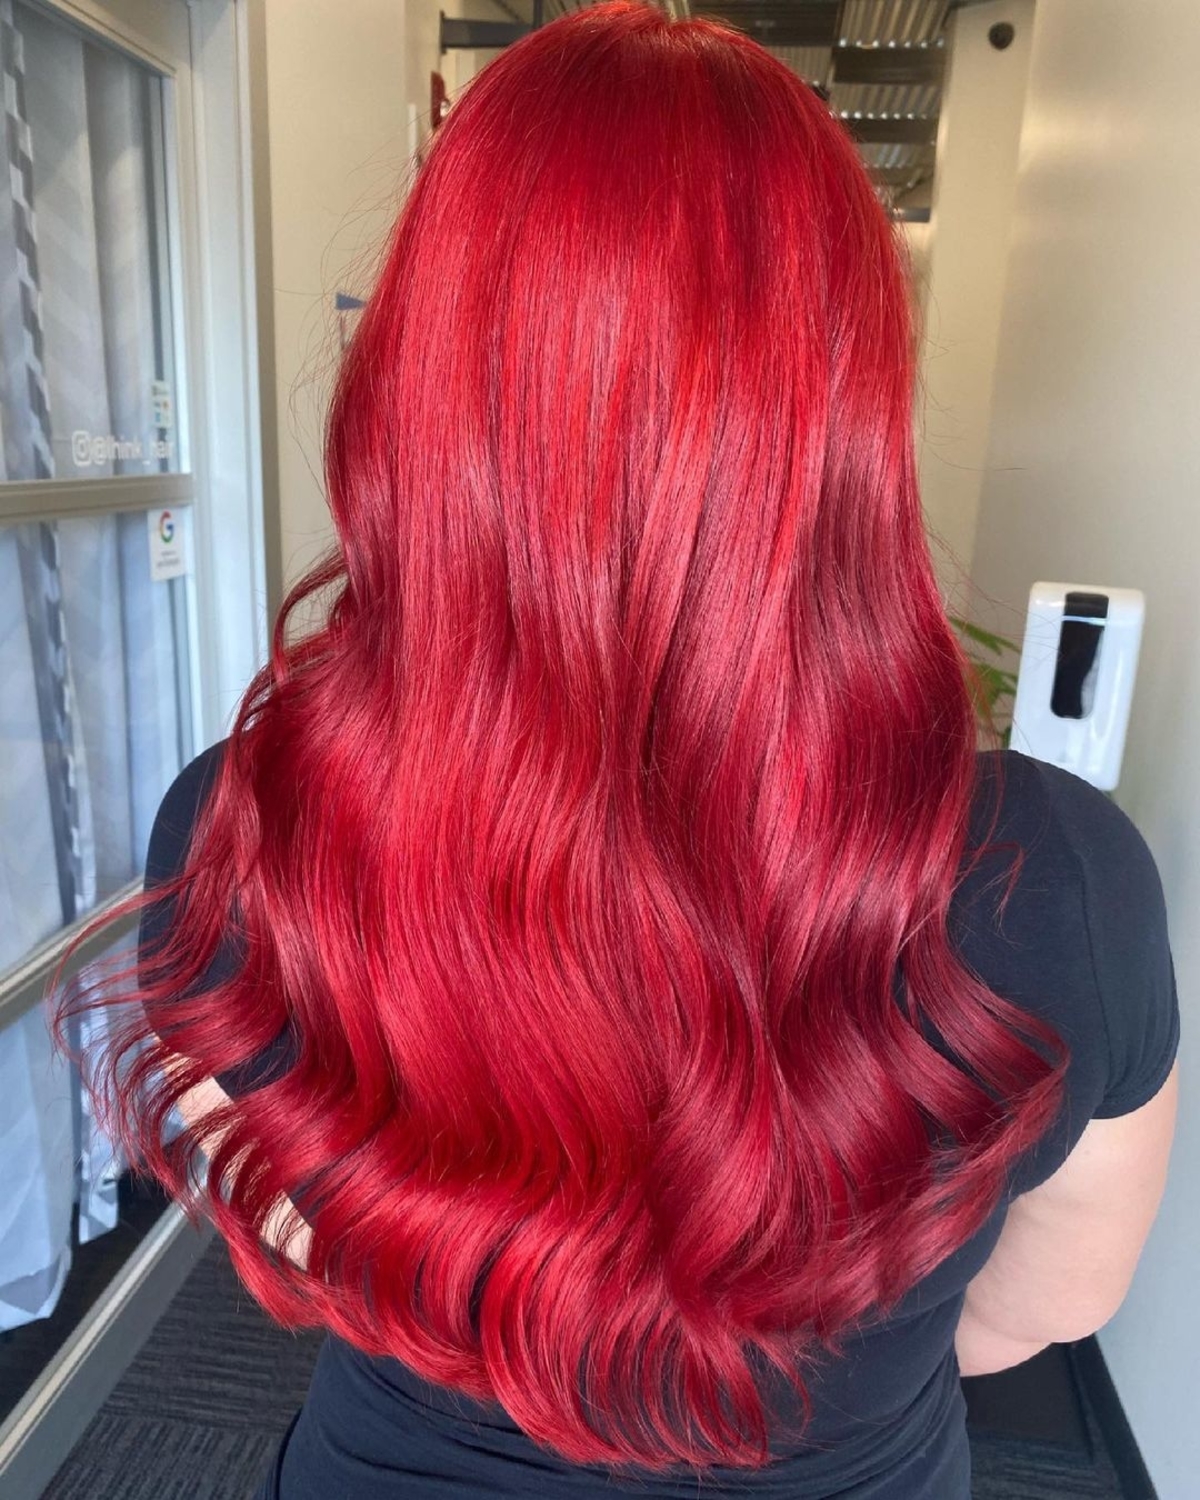 Zářivě krvavě rudé vlasy